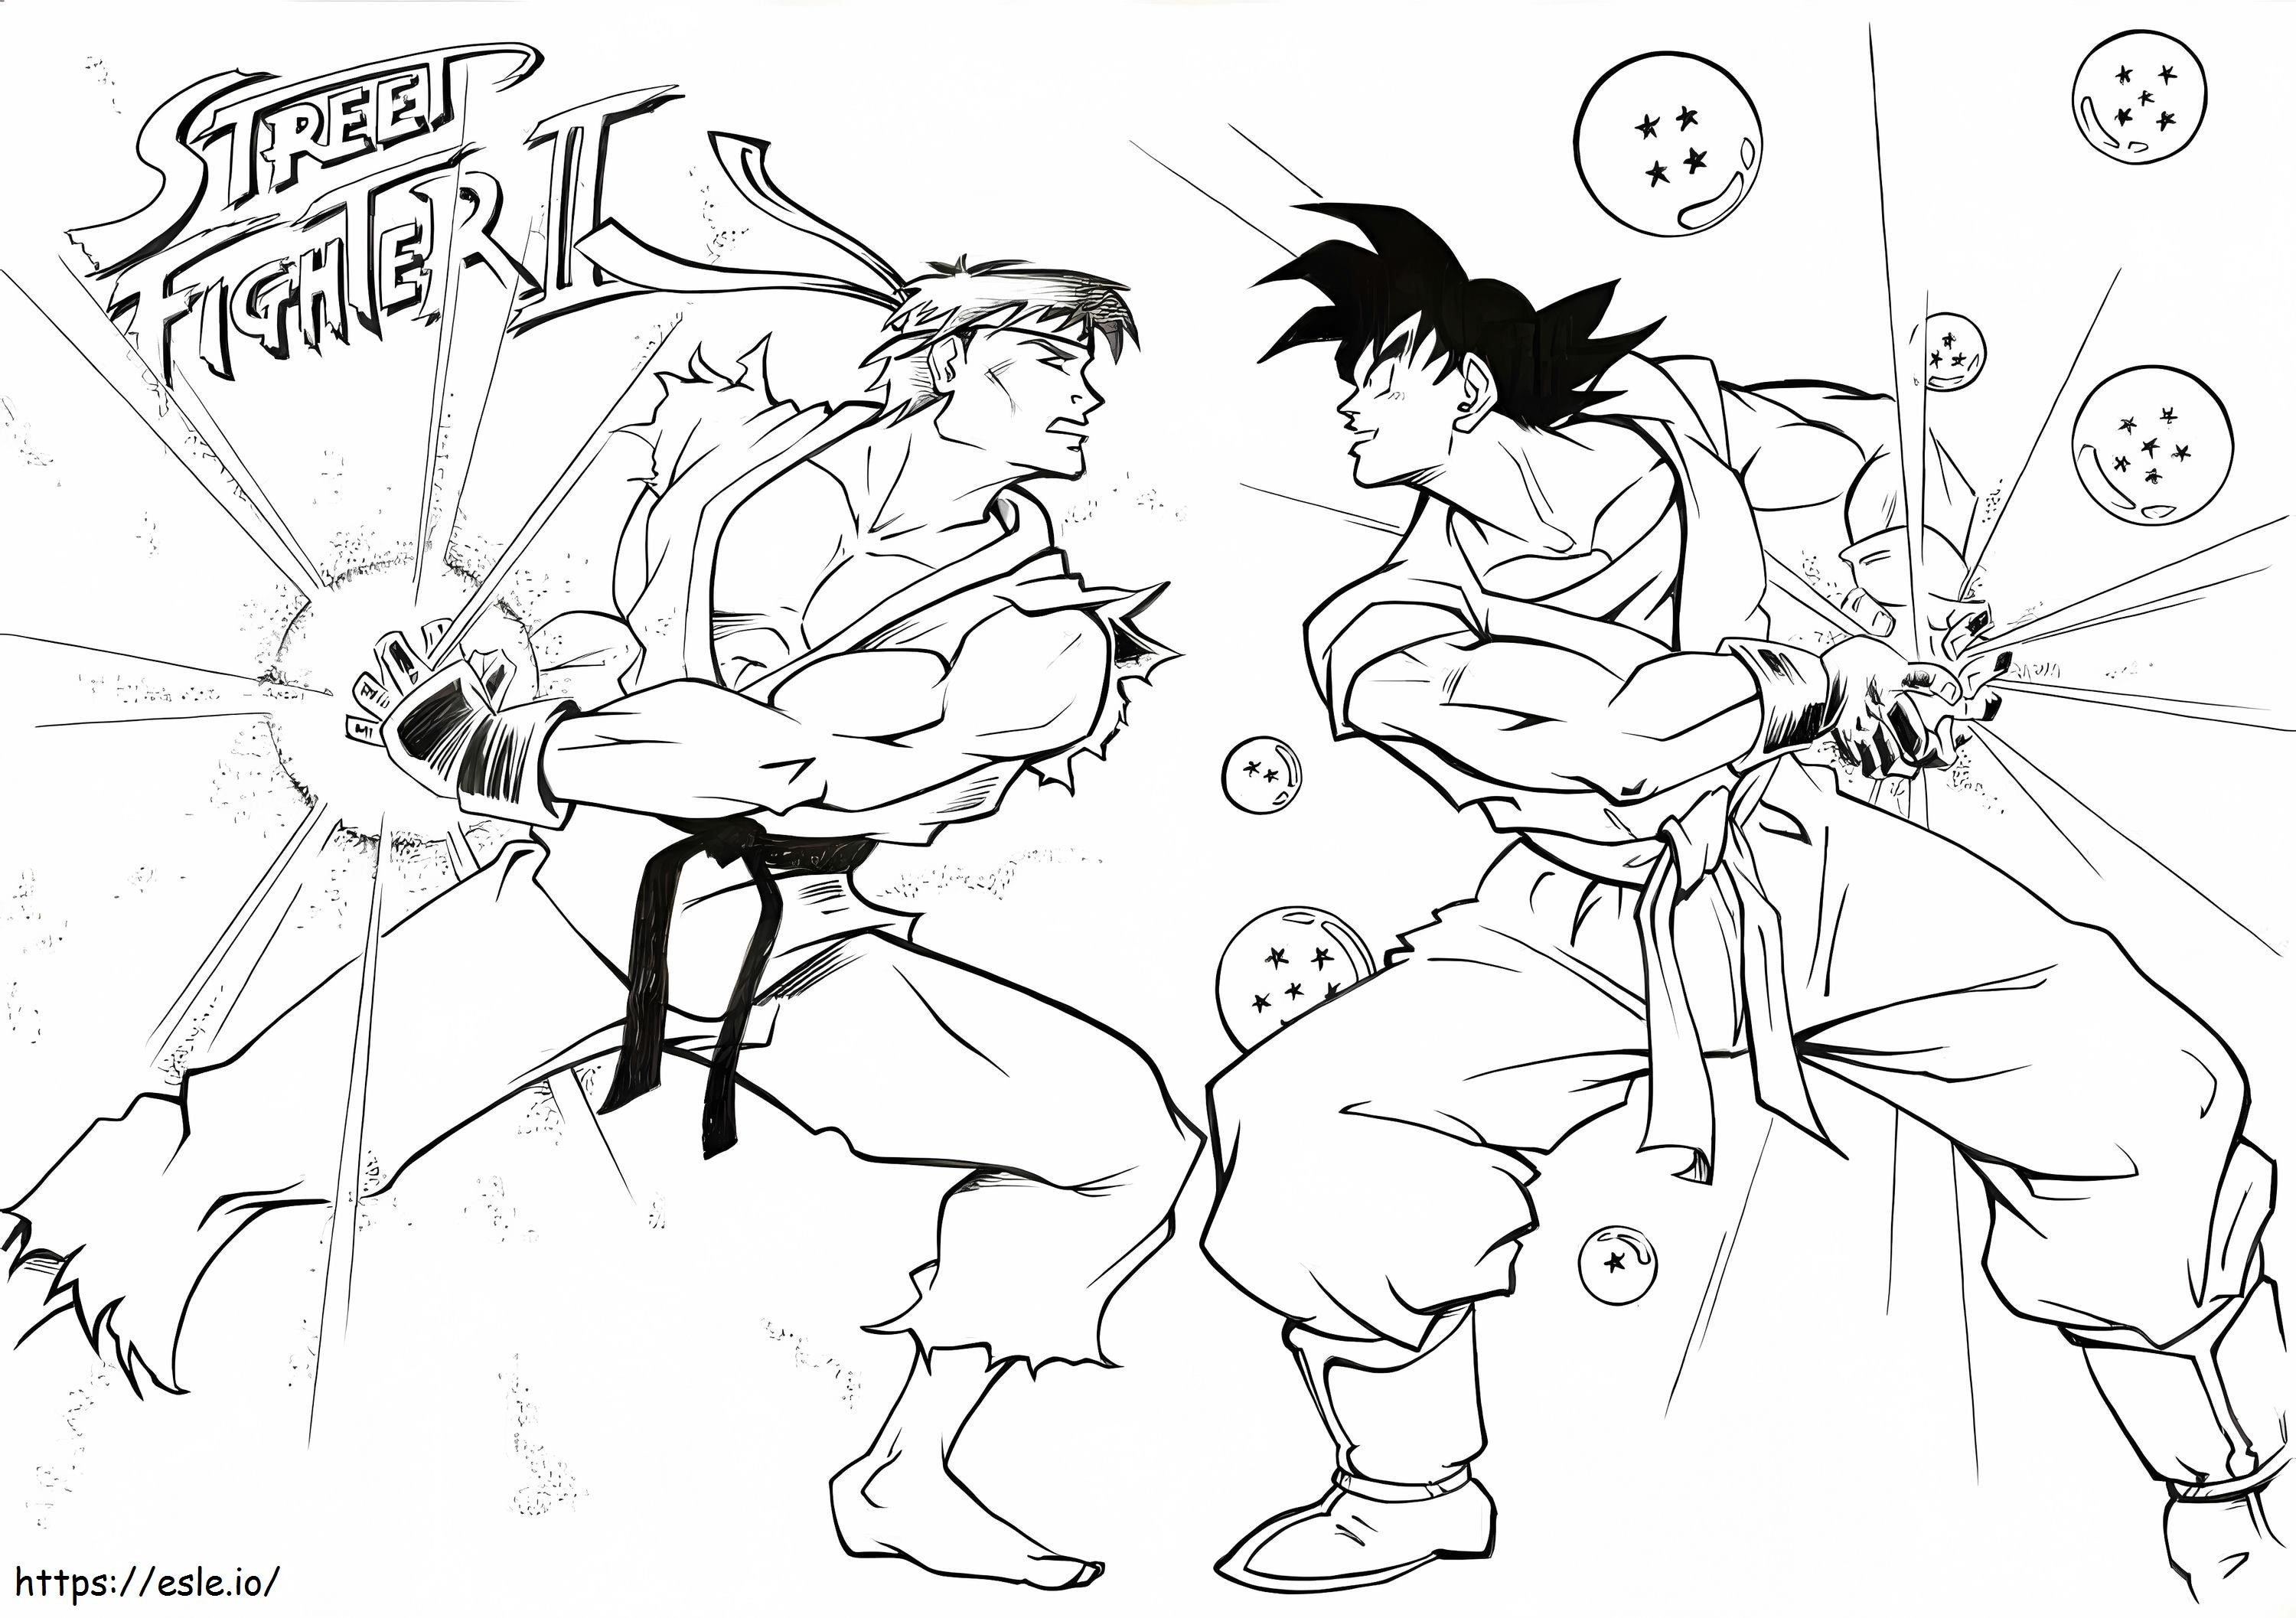 Ryu Vs Goku din Street Fighter de colorat